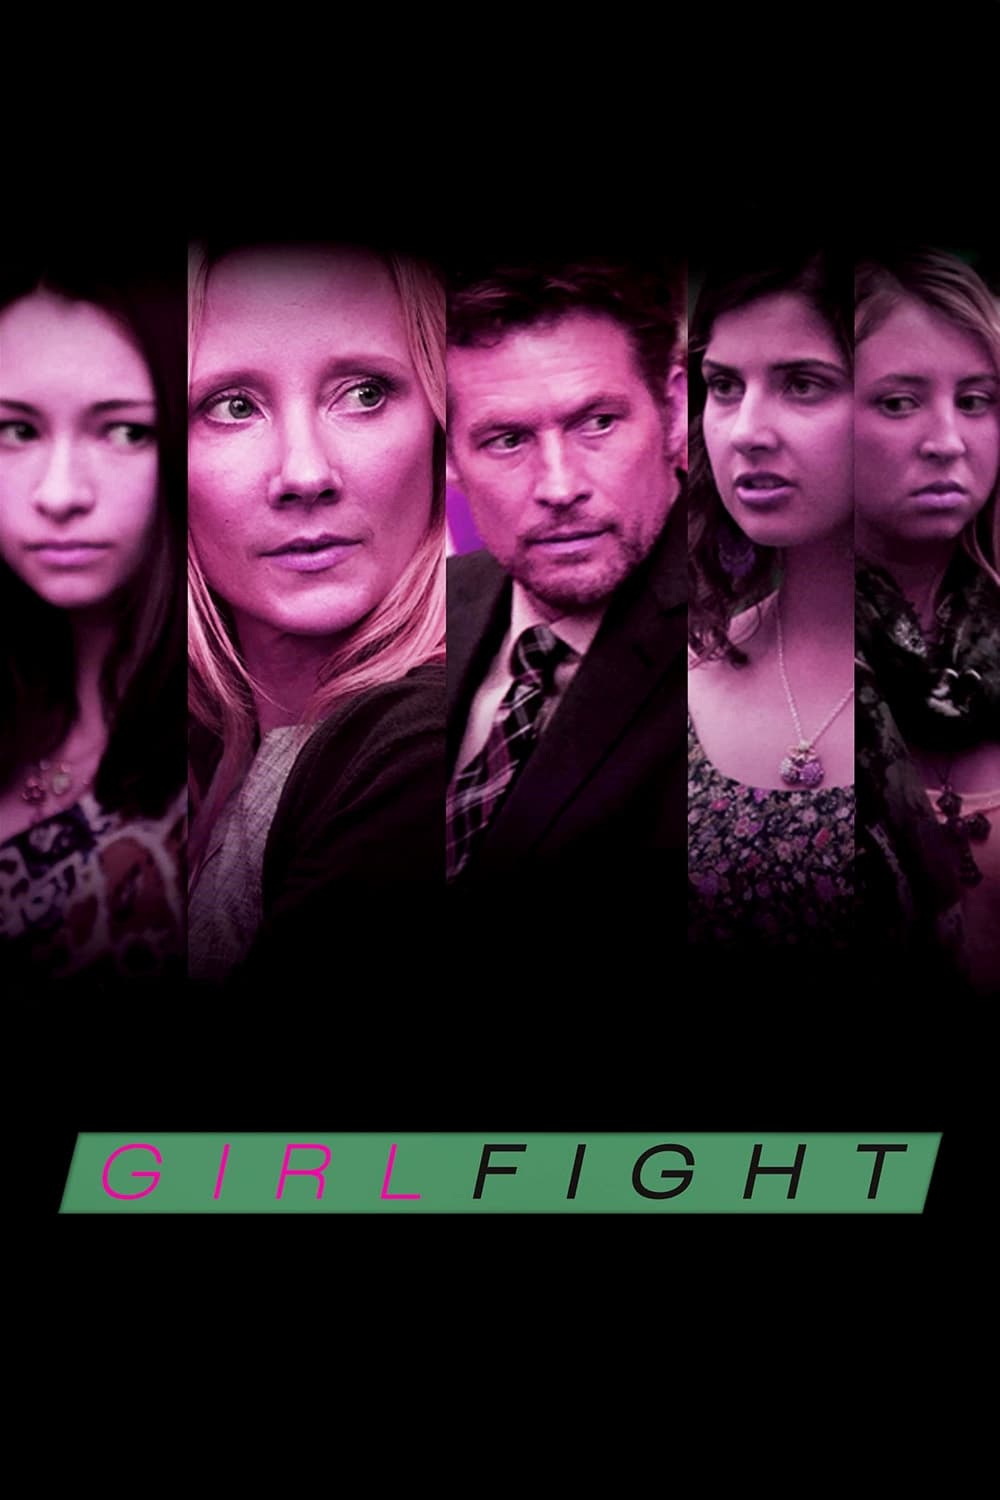 Best of Girlfight full movie online